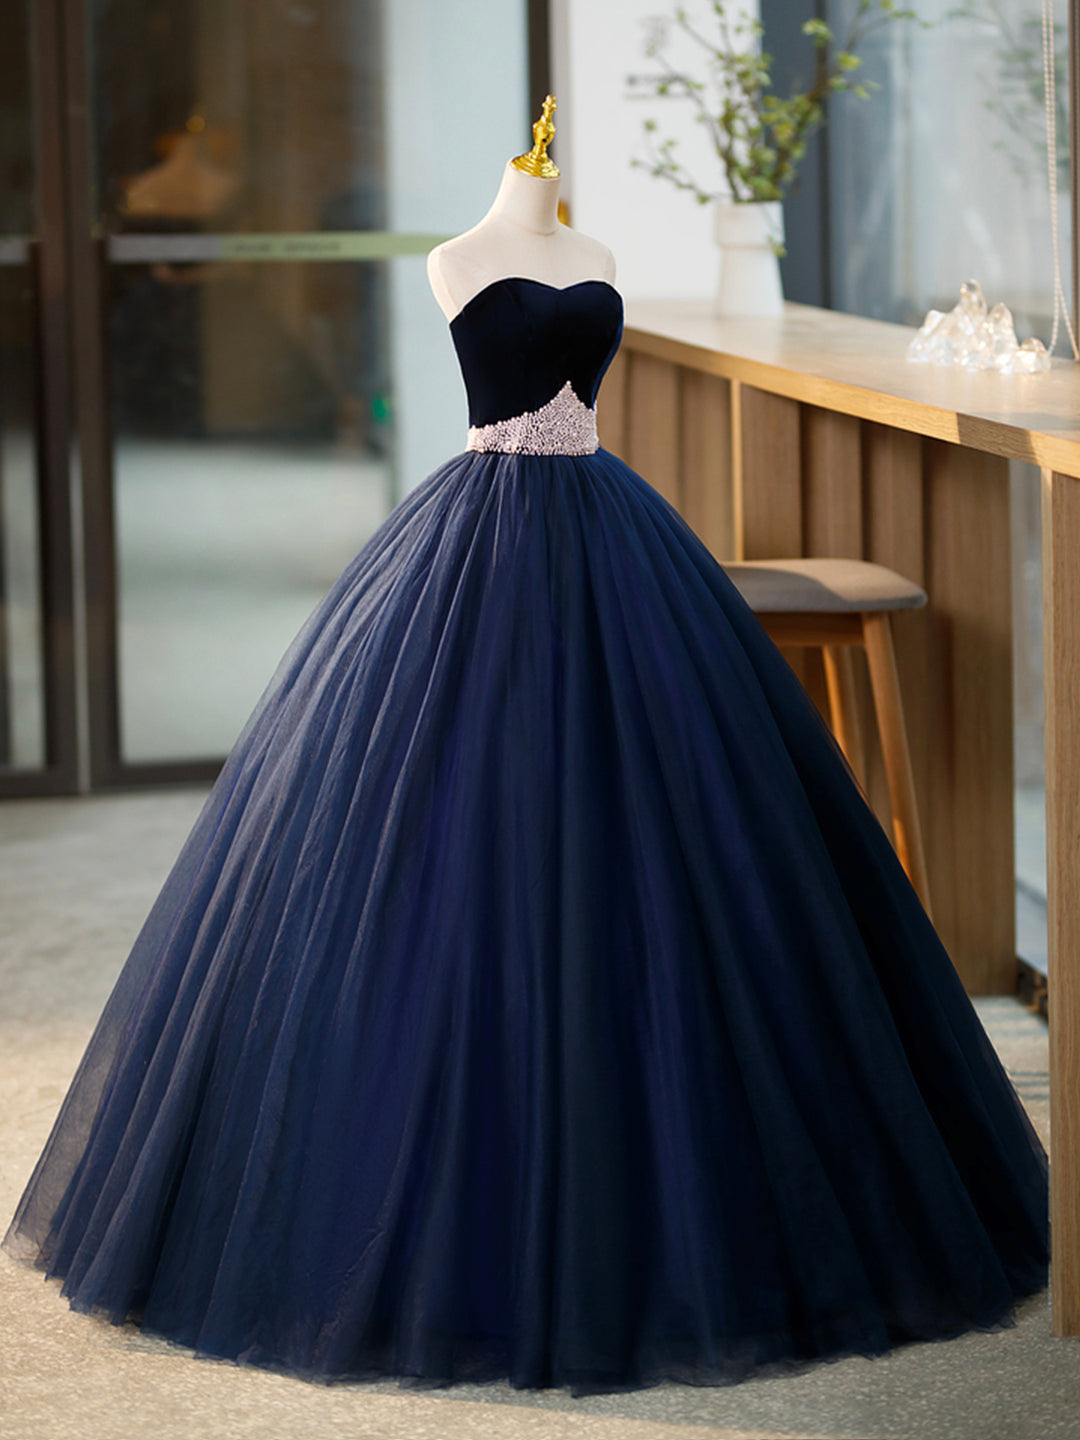 Formal Dresses Graduation, Blue Tulle Long Formal Dress with Velvet, Blue Sweetheart Neck Prom Dress